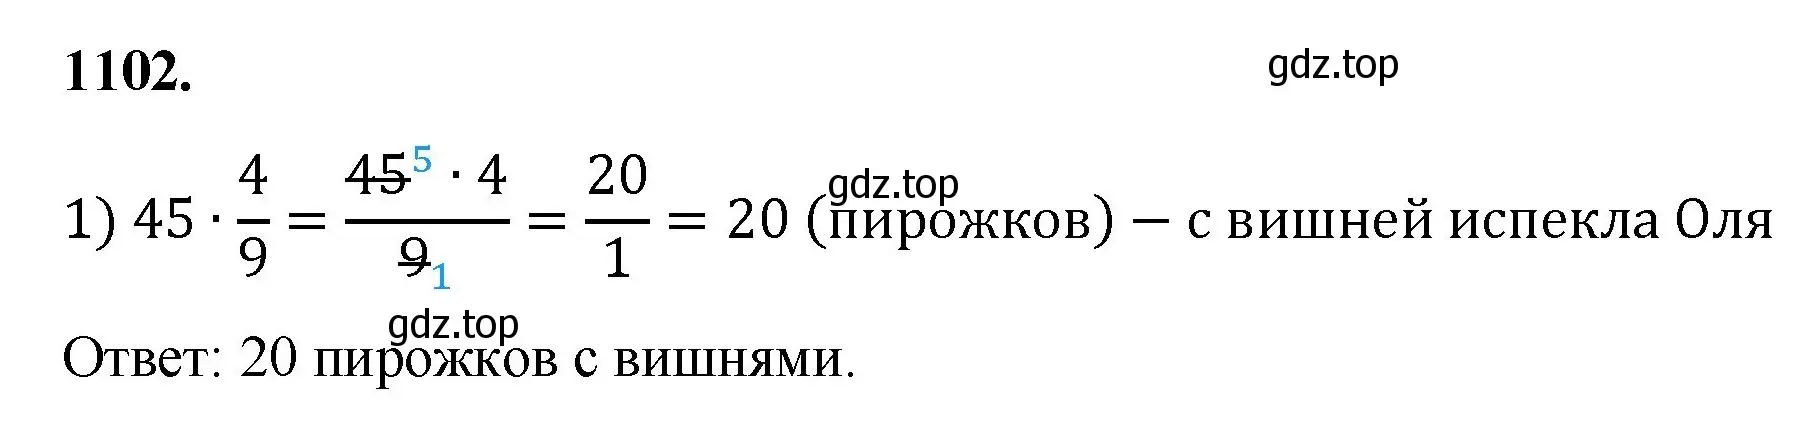 Решение номер 1102 (страница 247) гдз по математике 5 класс Мерзляк, Полонский, учебник